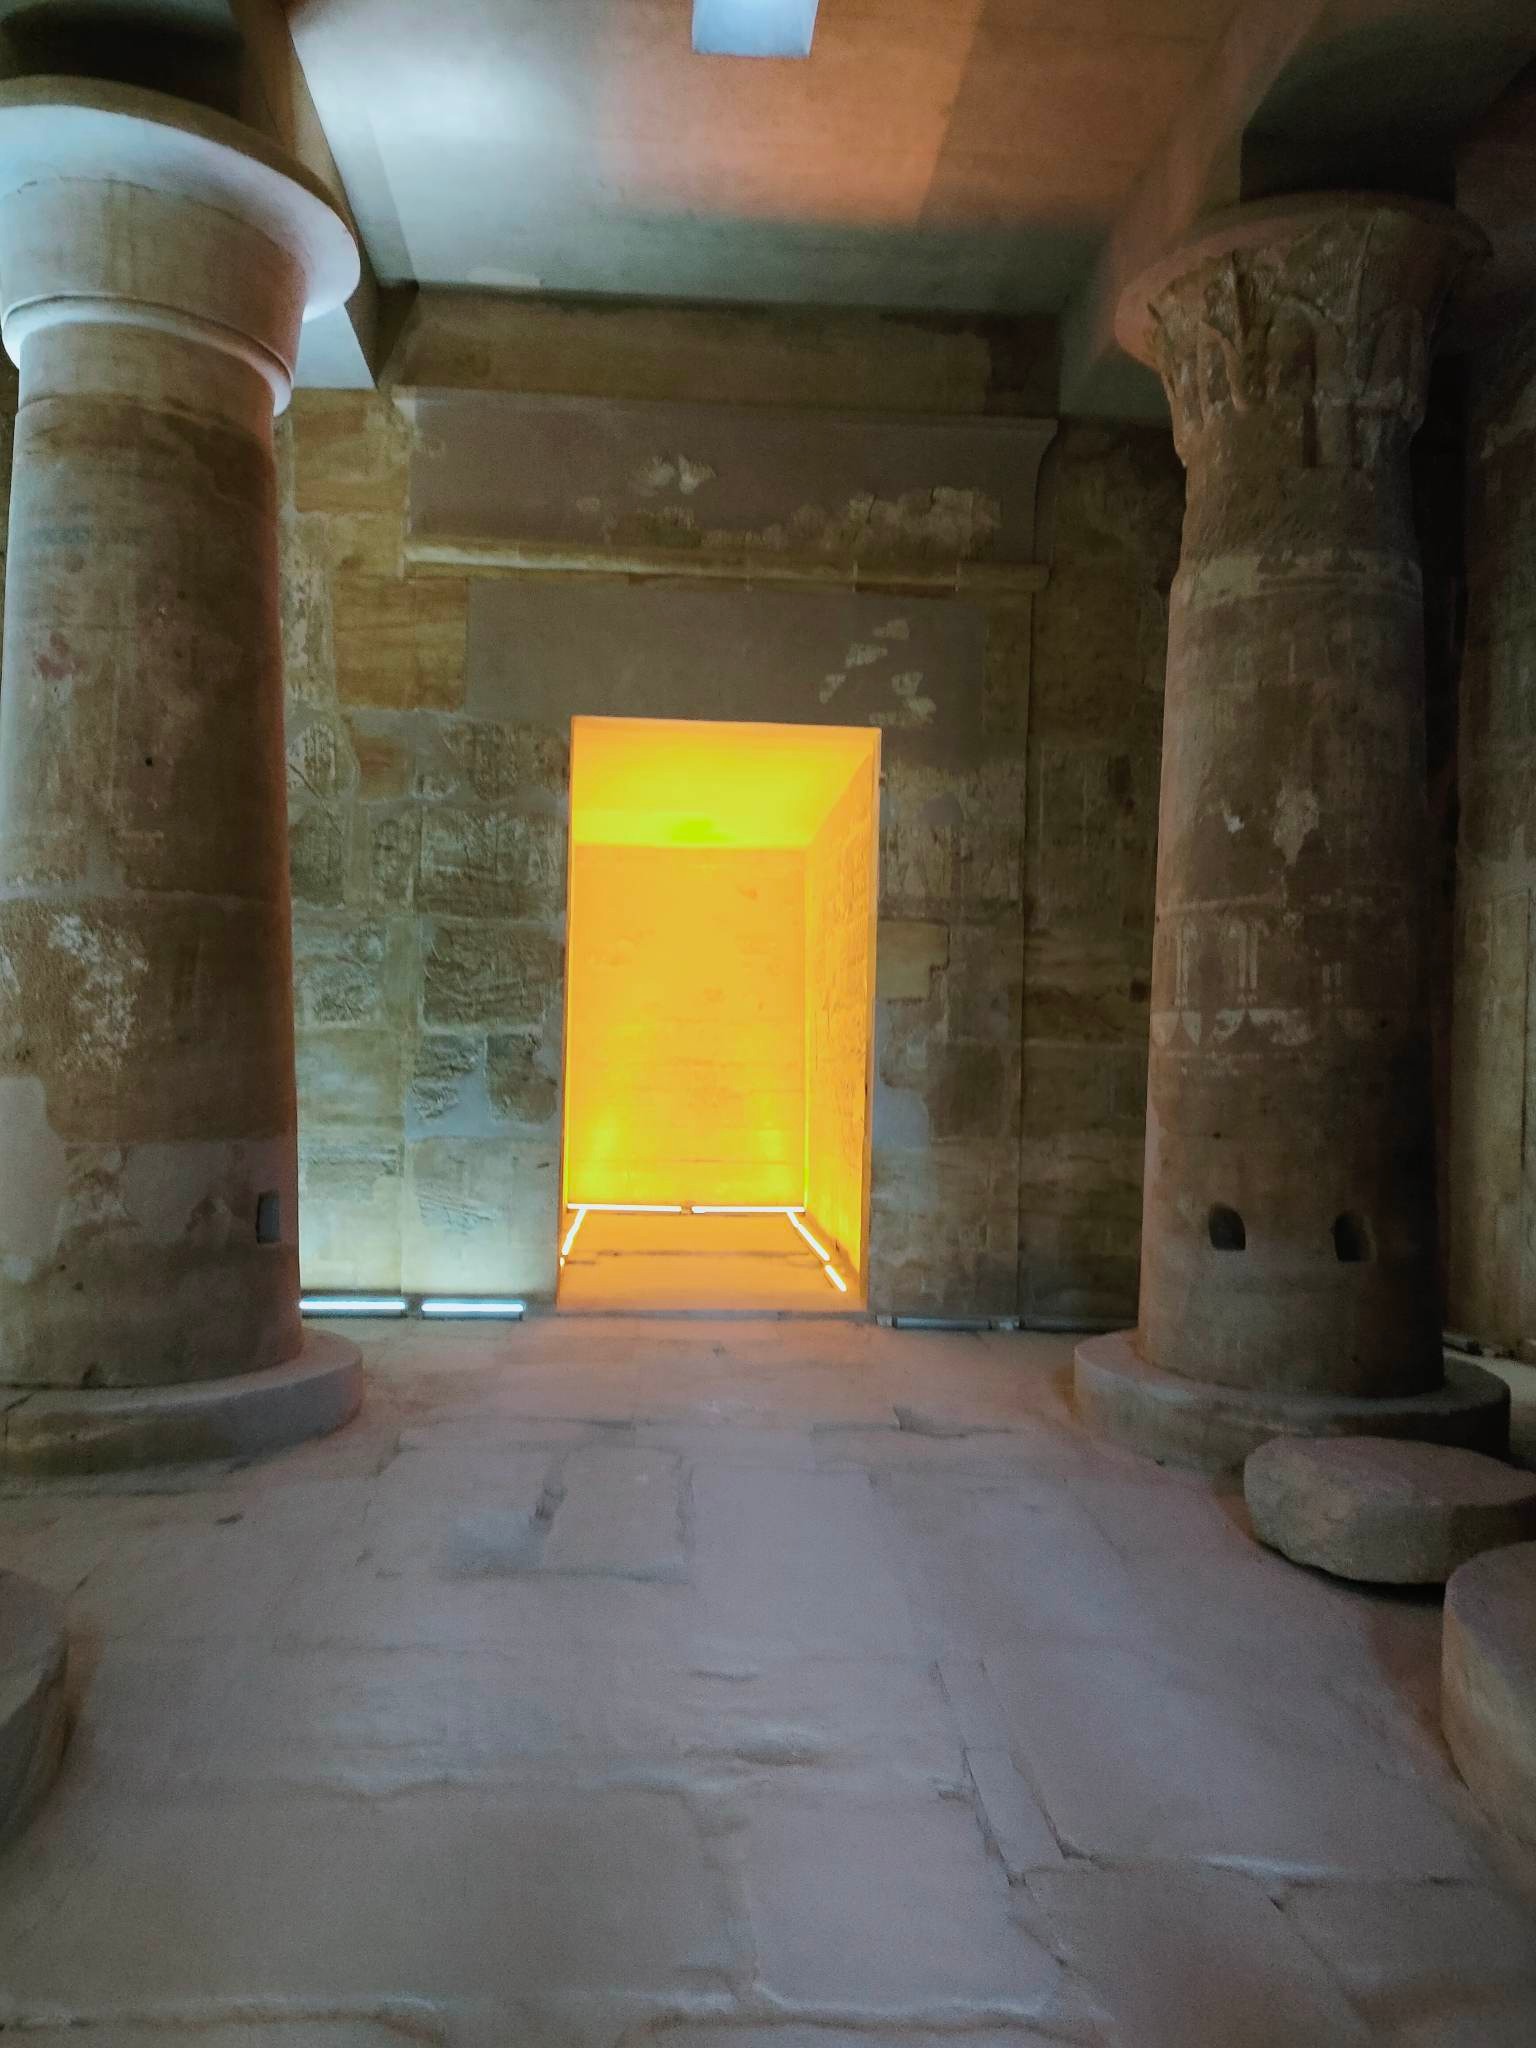 إدخال مشروع الصوت والضوء بالمعبد